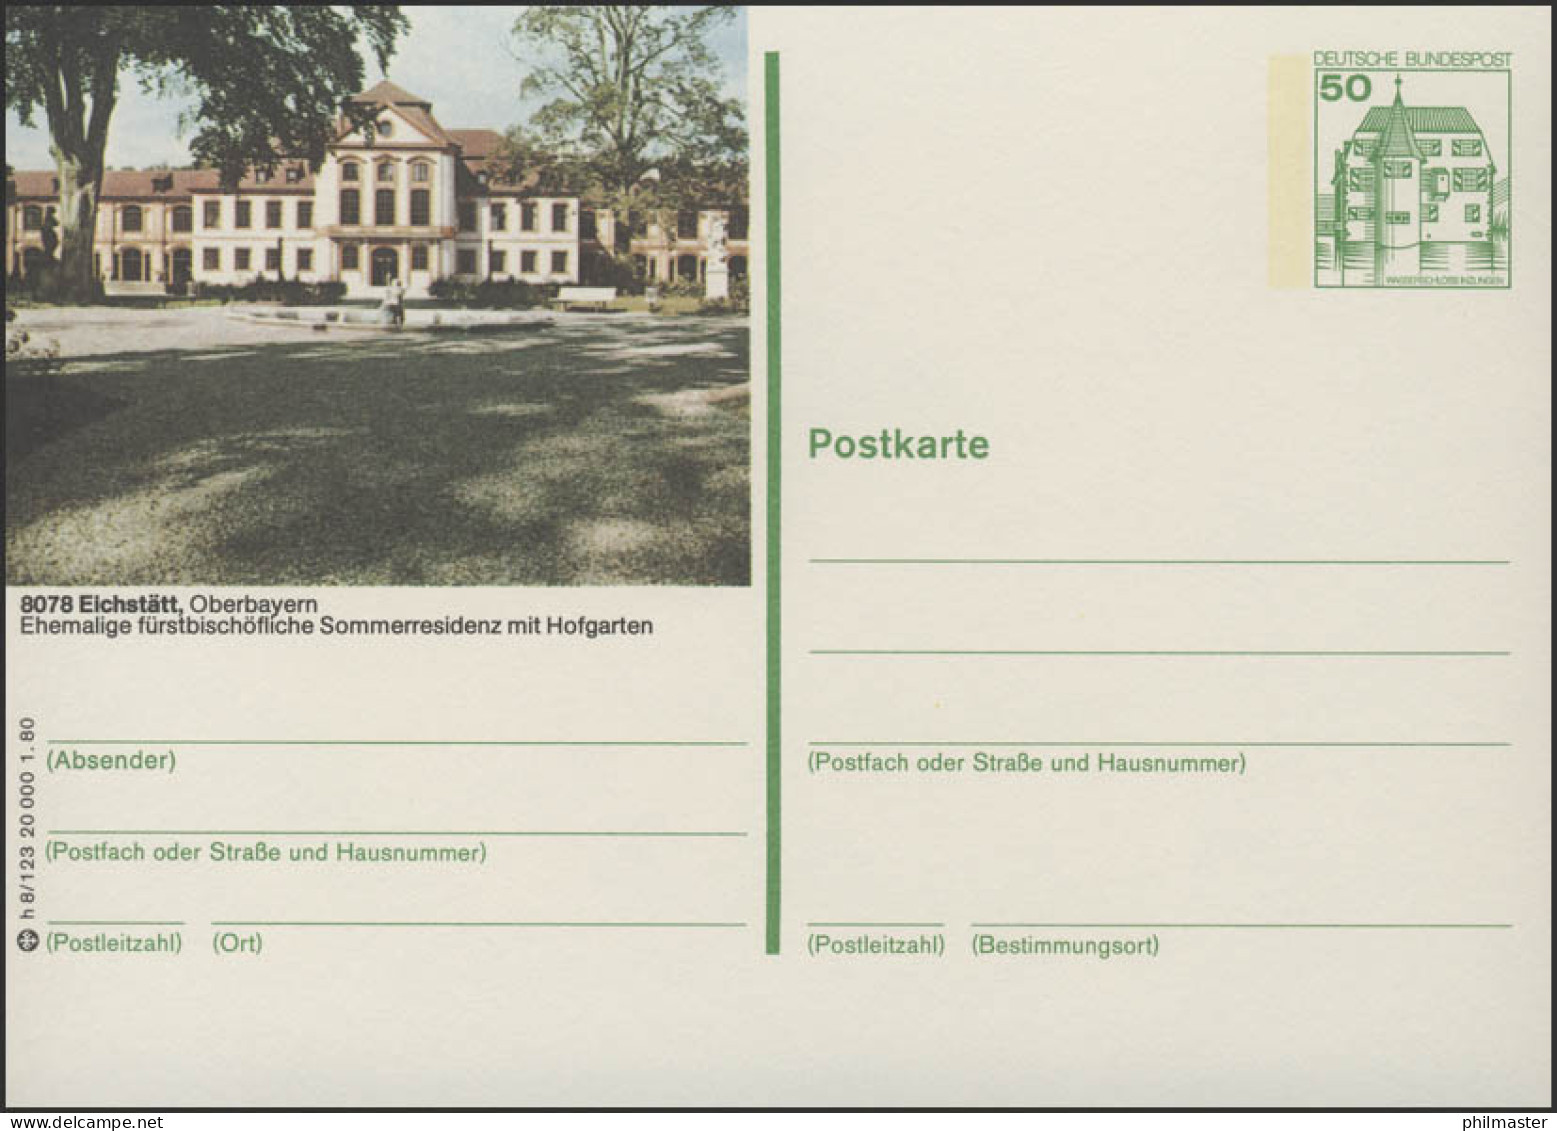 P130-h8/123 - 8078 Eichstädt, Schloß ** - Cartoline Illustrate - Nuovi